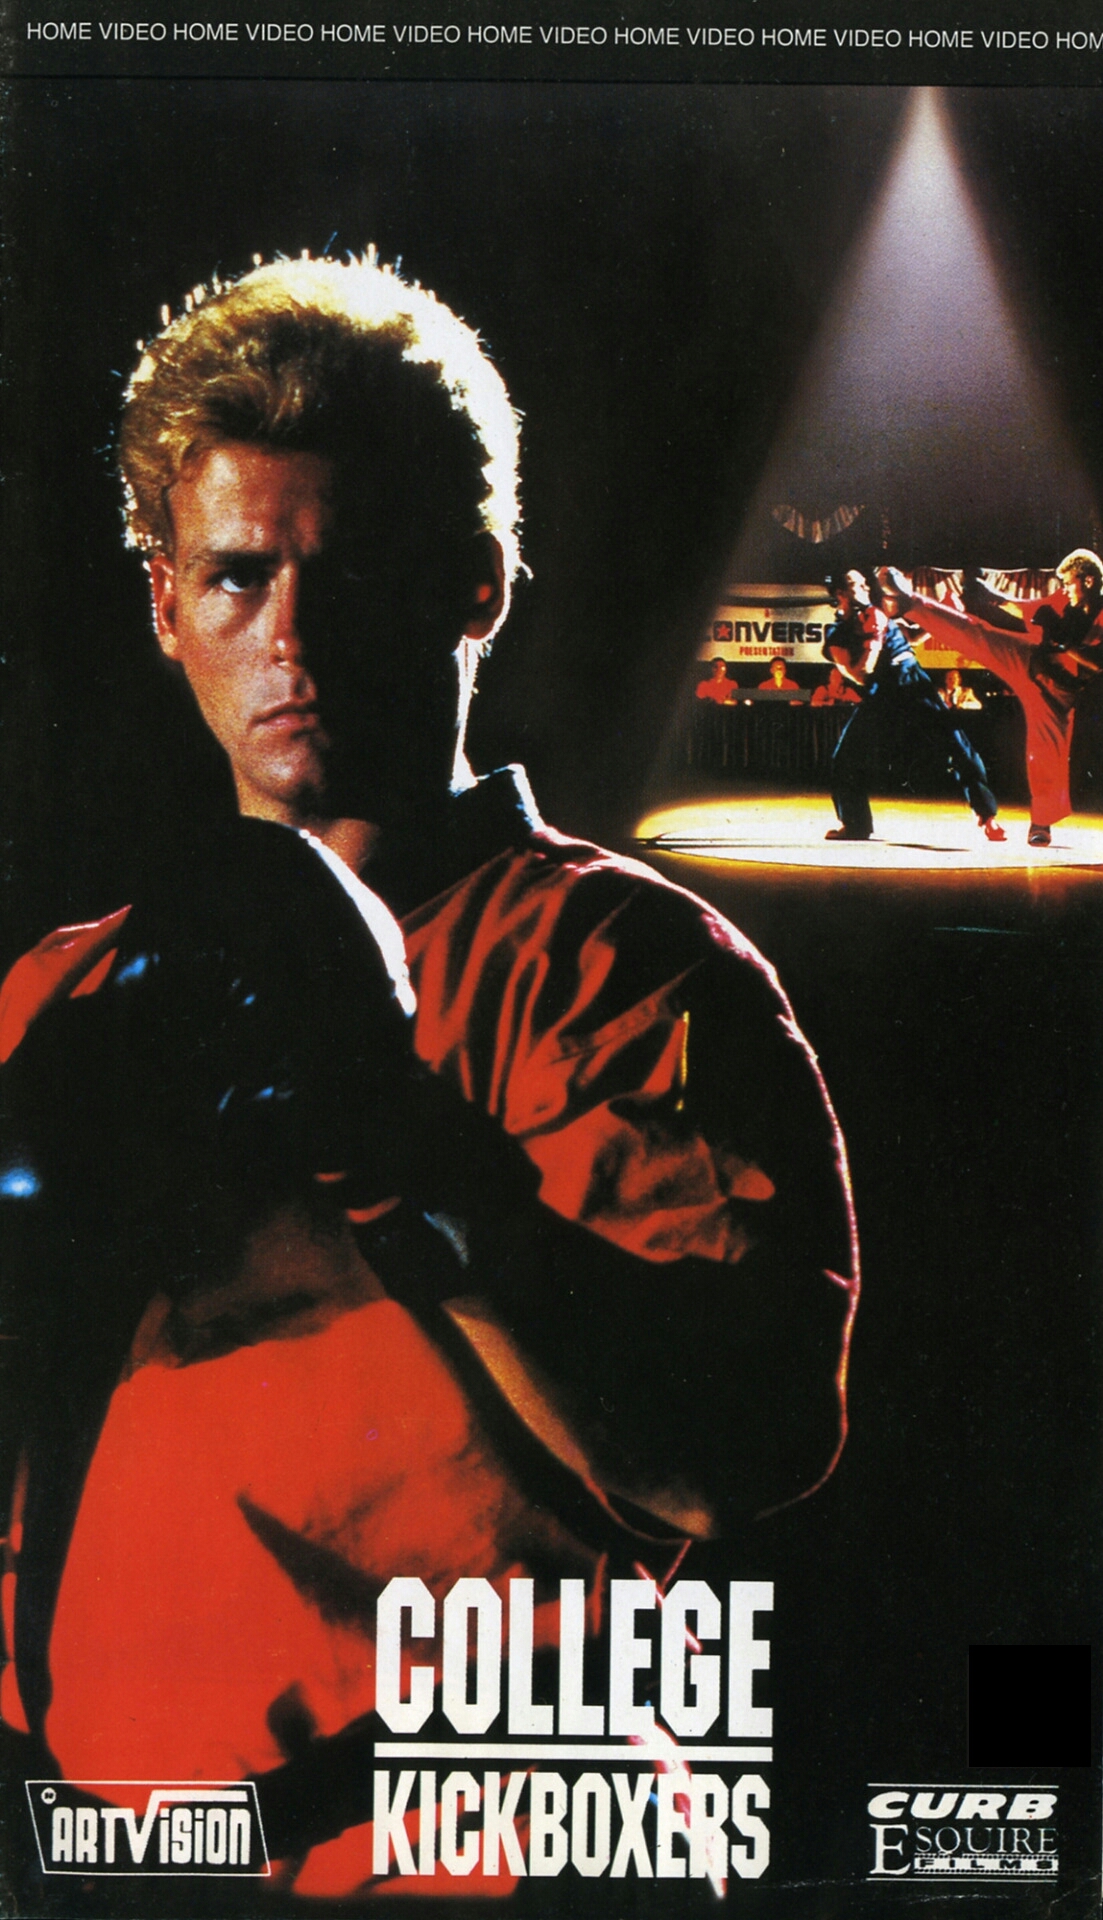 College Kickboxers (1991) Screenshot 3